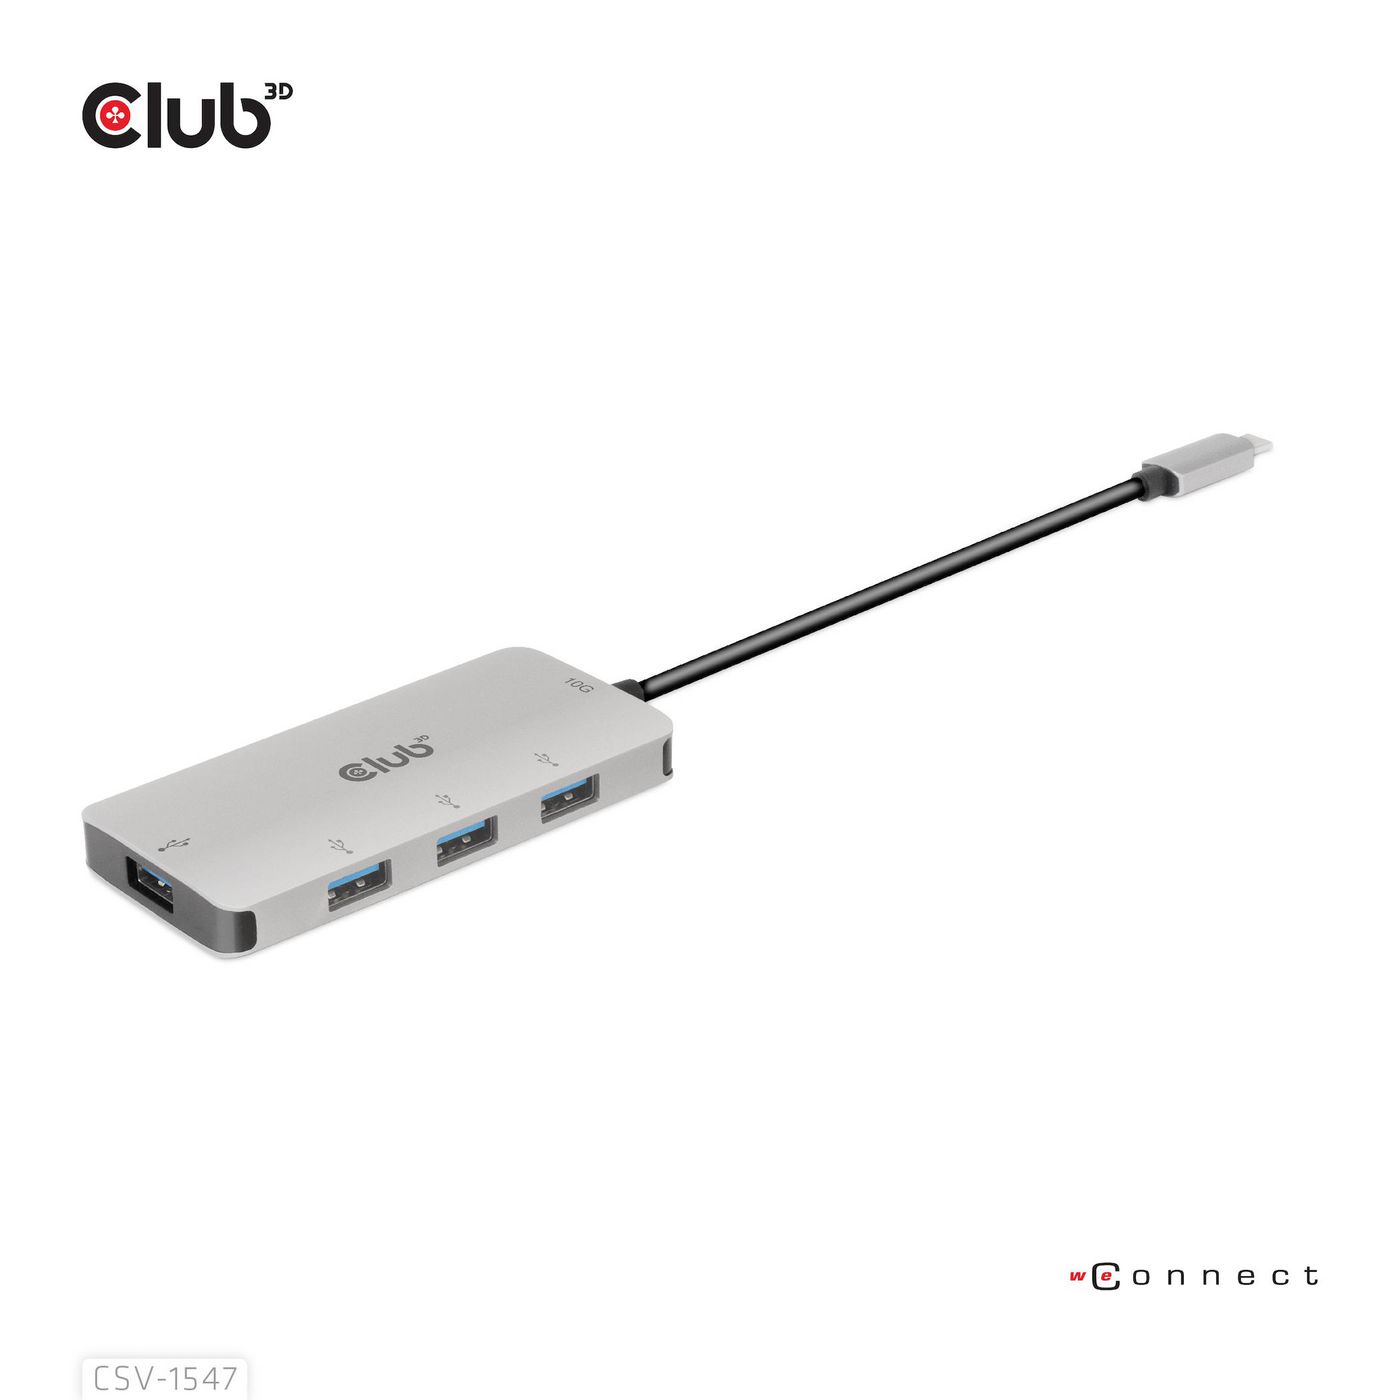 Club3D CSV-1547 W128561434 Usb Gen2 Type-C To 10Gbps 4X 